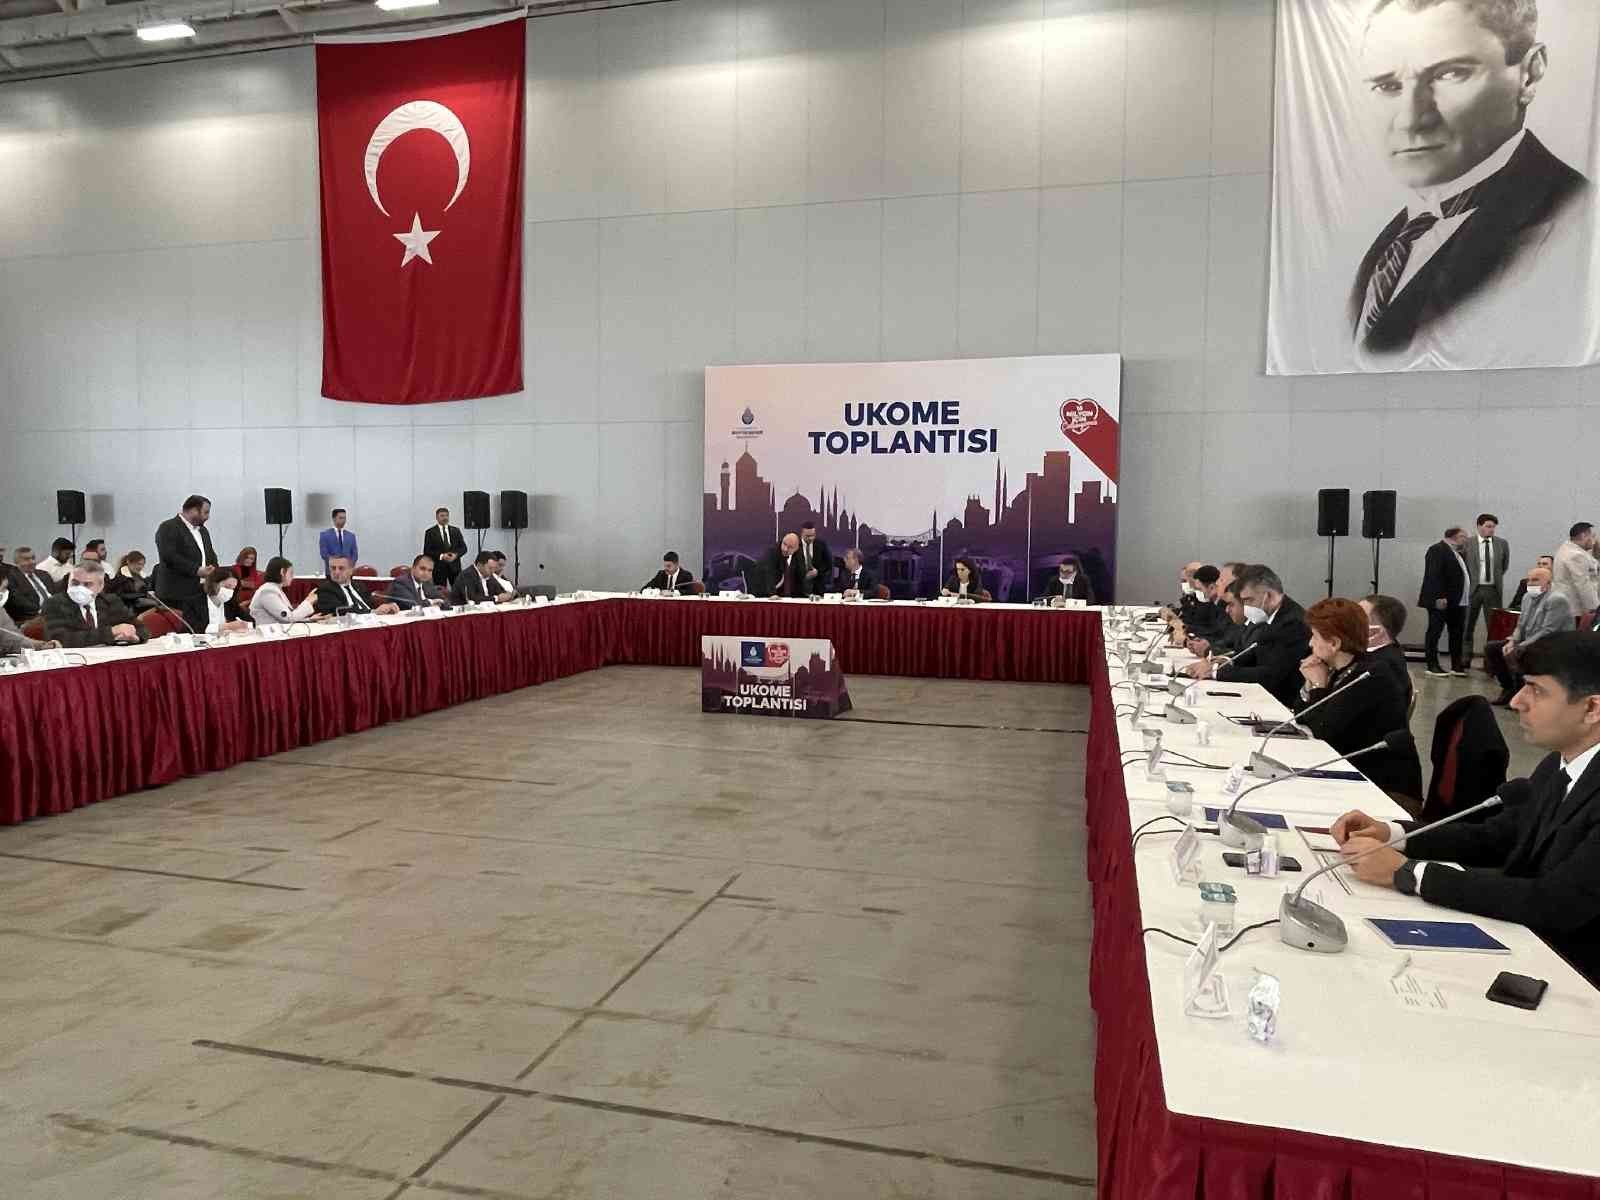 İstanbul Büyükşehir Belediyesi Ulaşım Koordinasyon Merkezi toplantısında, elektronik bilet, taksi, taksi dolmuş ve minibüs ücretlerine yüzde 40 ...